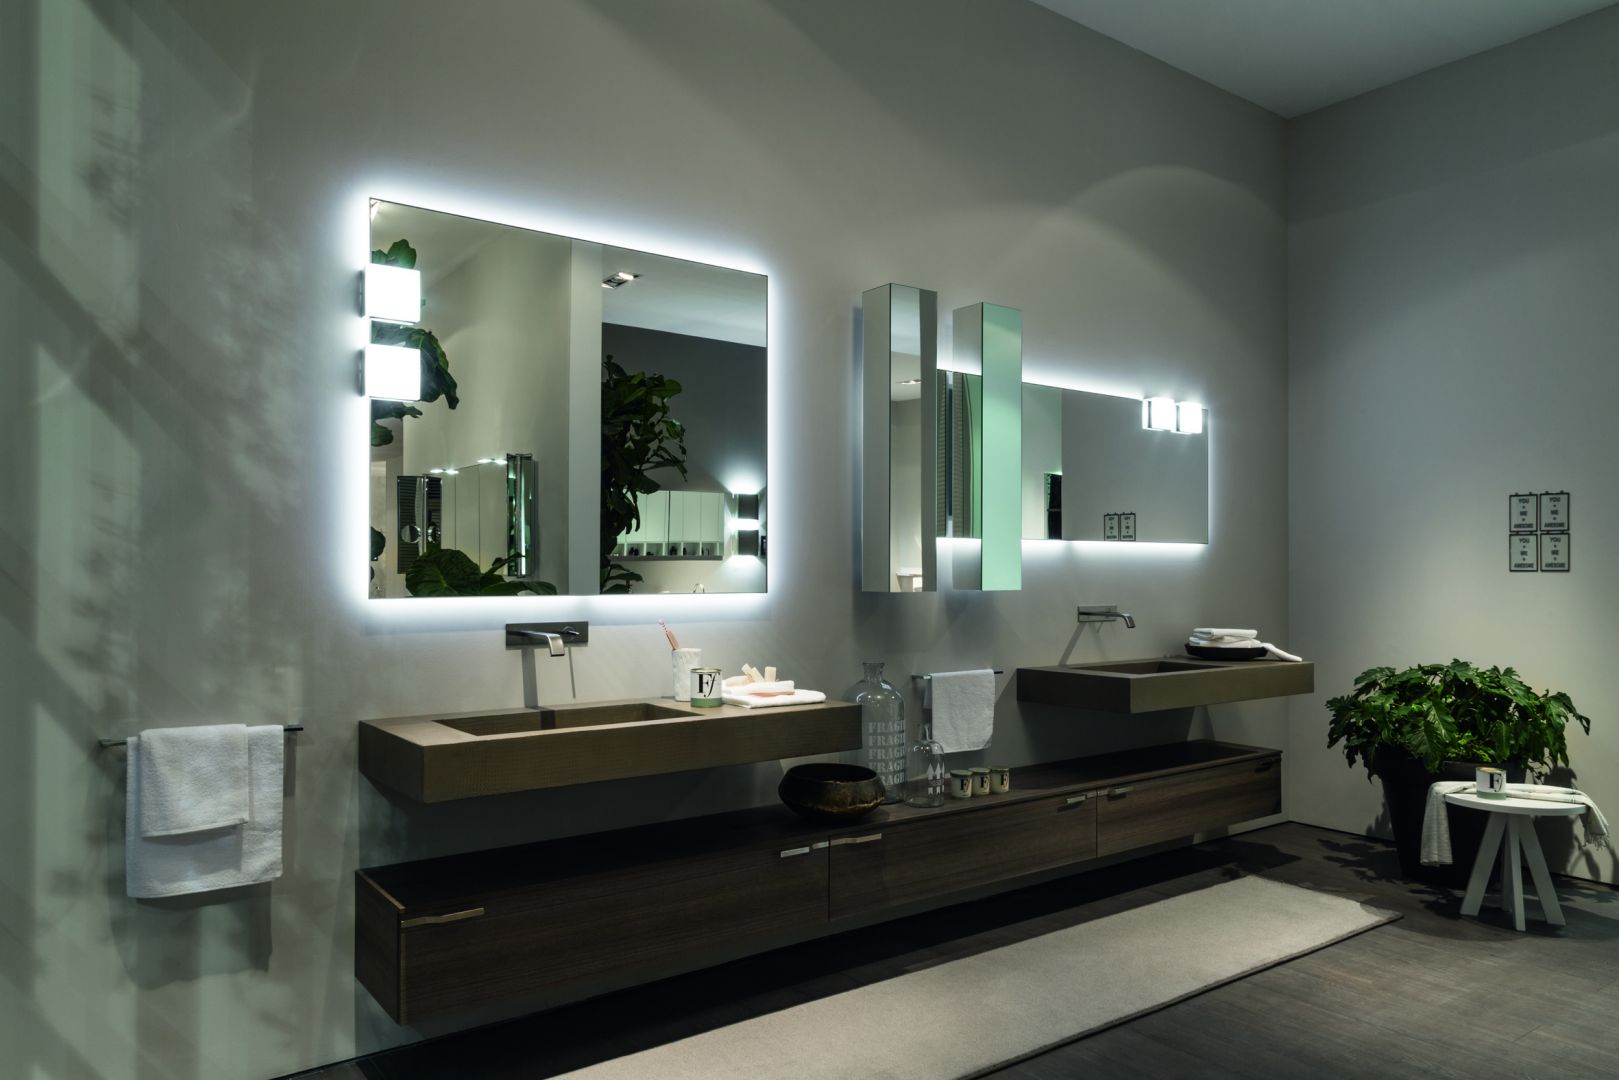 Czekoladowy brąz i perfekcyjnie oświetlone lustra tworzą razem nowoczesną kompozycję łazienkową. Fot. Scavolini